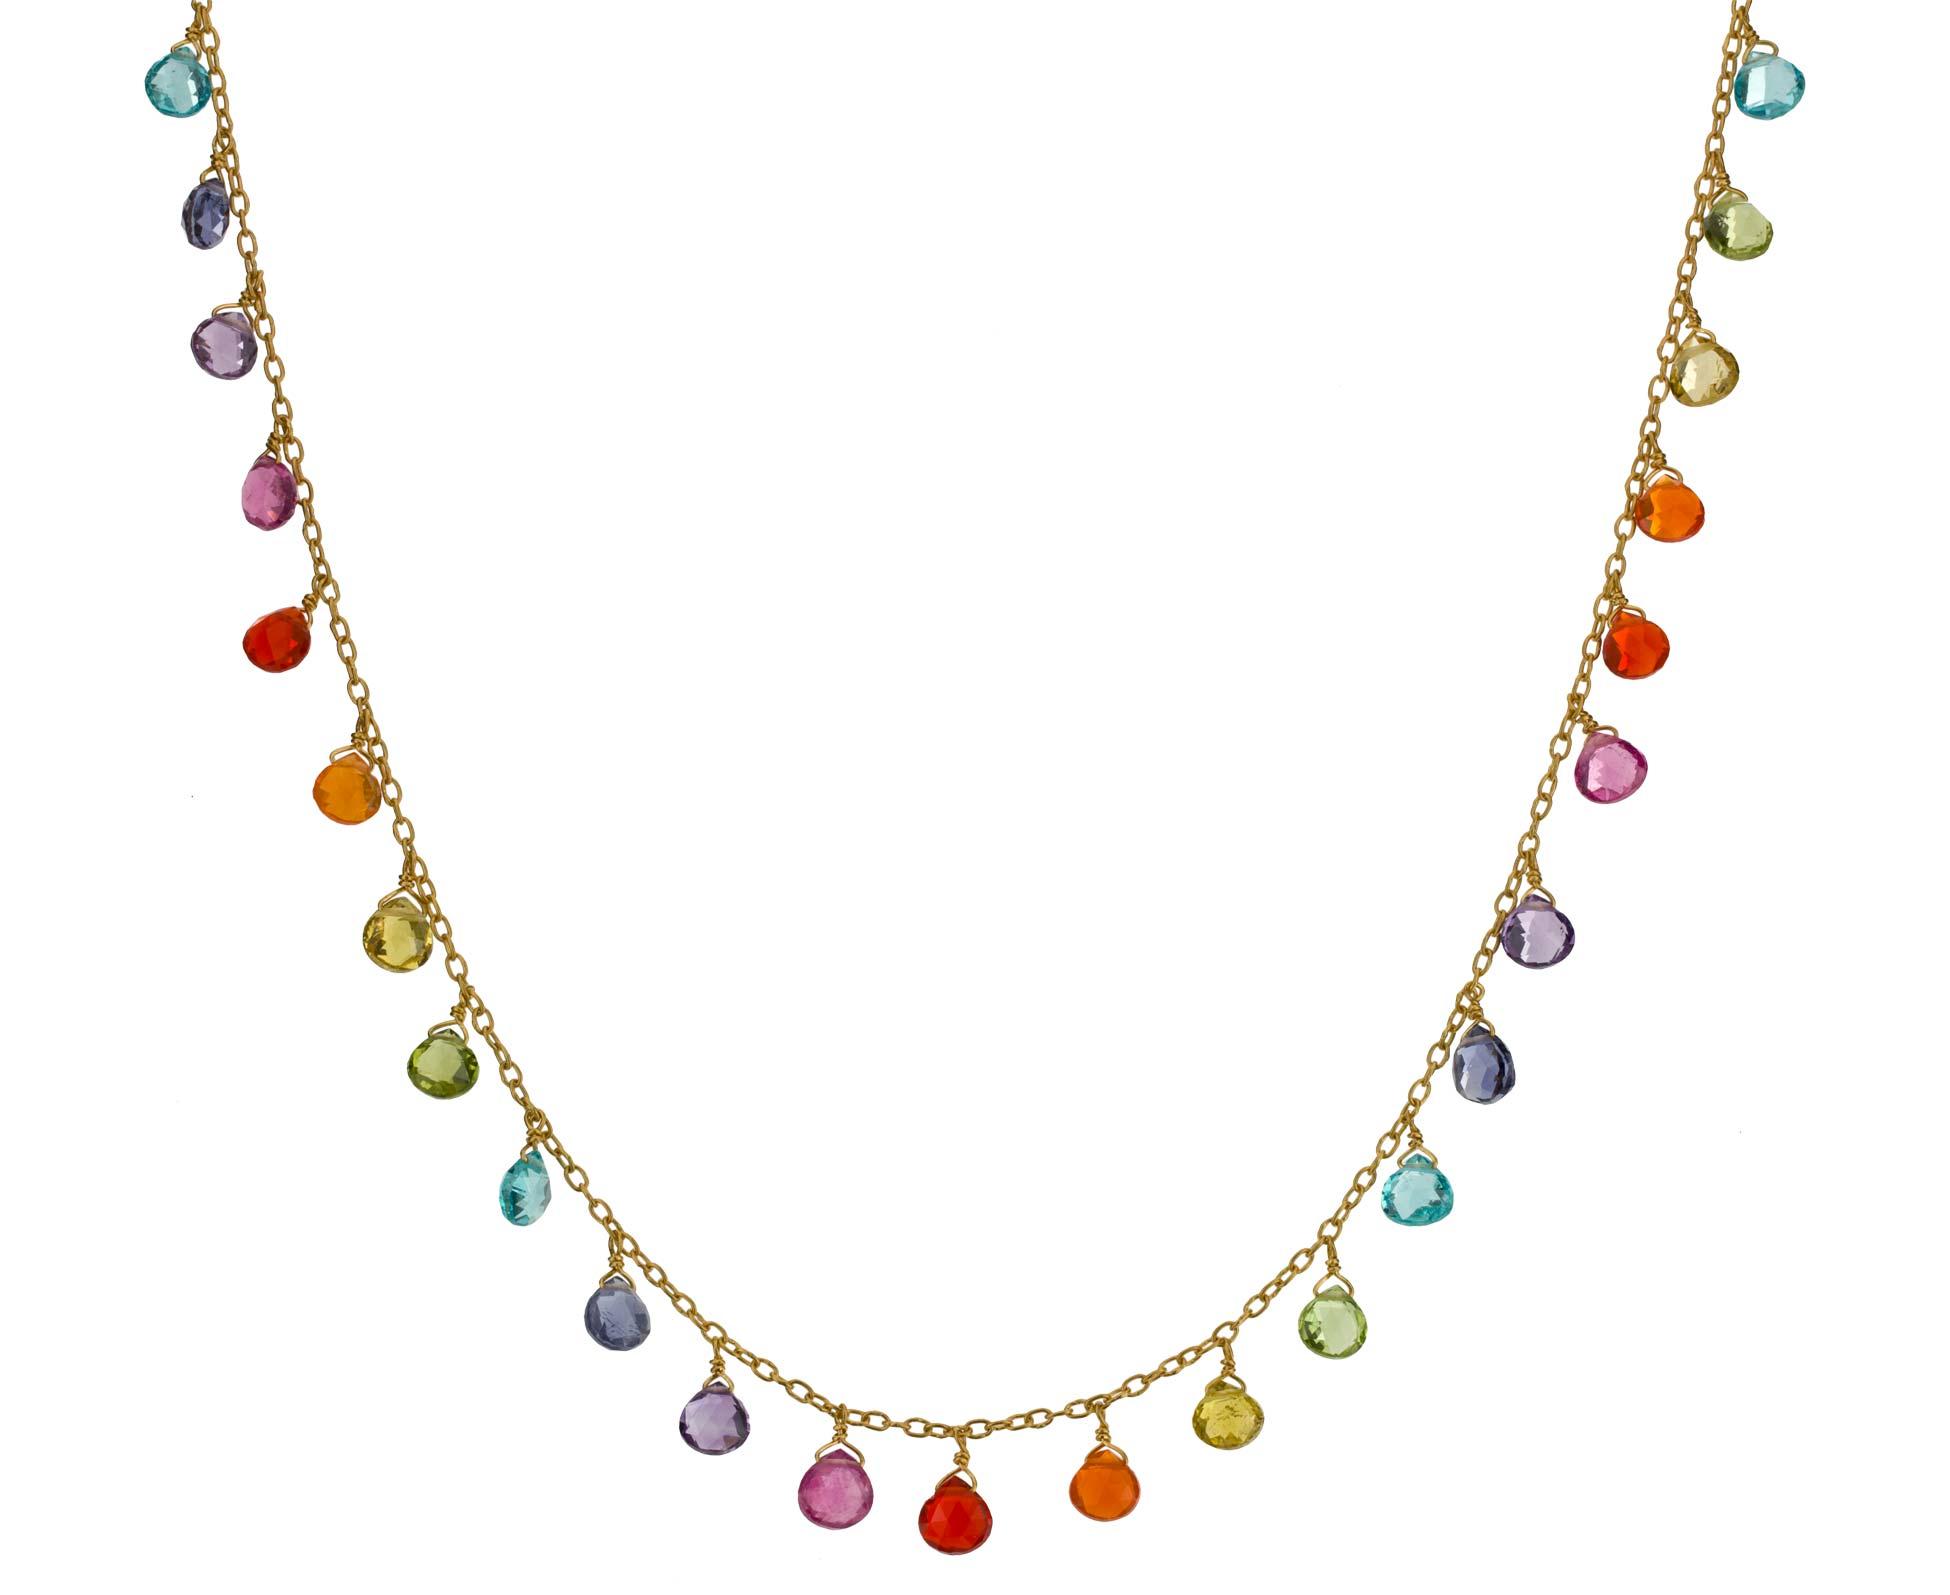 Marine_helene_Taillac_rainbow_necklace